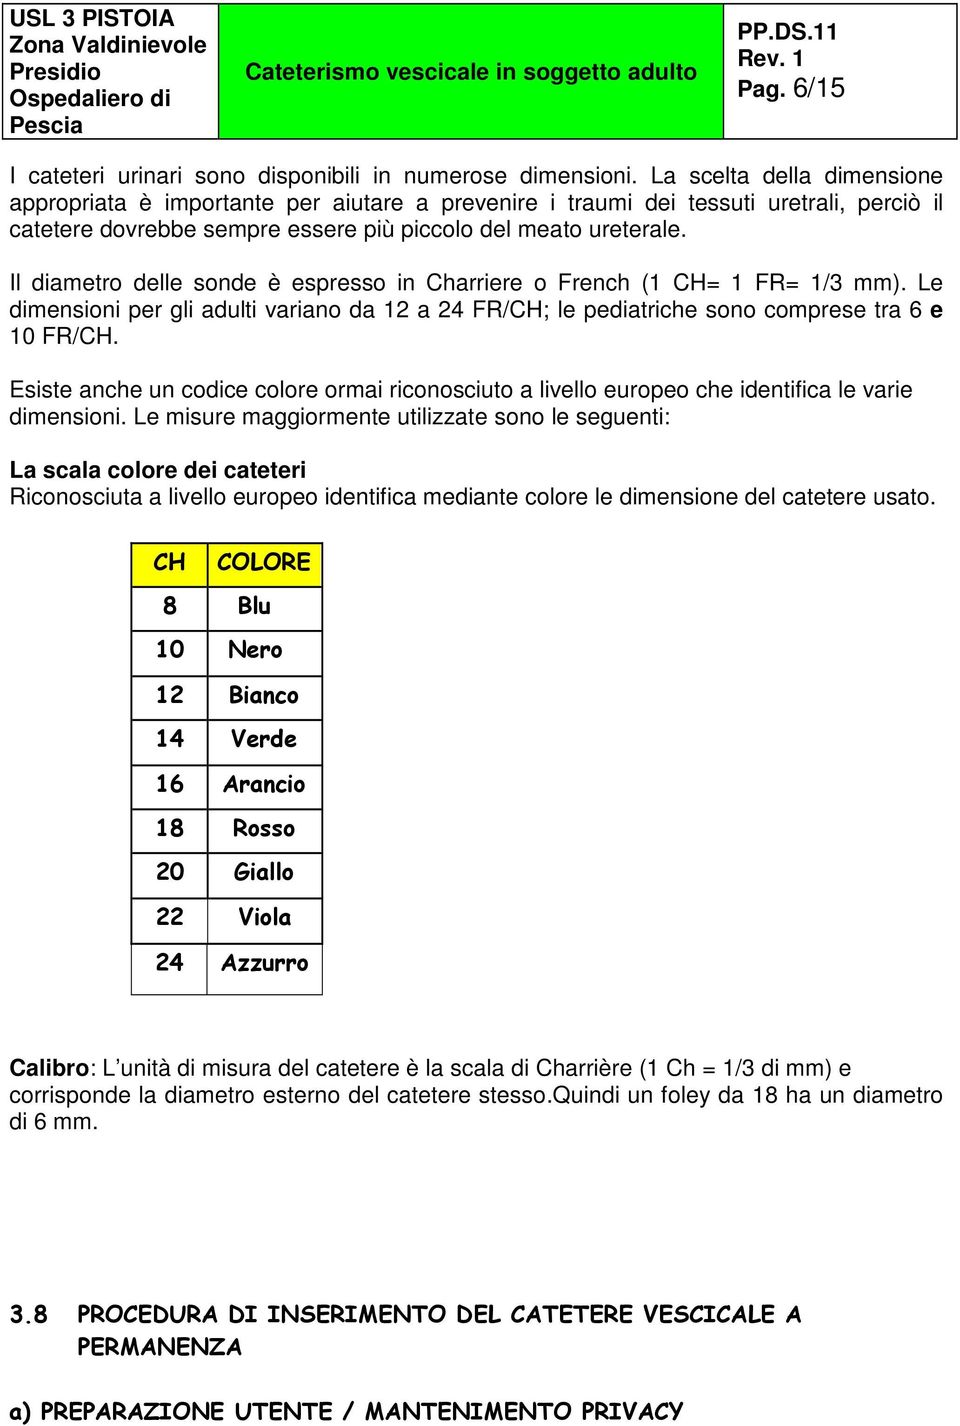 Il diametro delle sonde è espresso in Charriere o French (1 CH= 1 FR= 1/3 mm). Le dimensioni per gli adulti variano da 12 a 24 FR/CH; le pediatriche sono comprese tra 6 e 10 FR/CH.